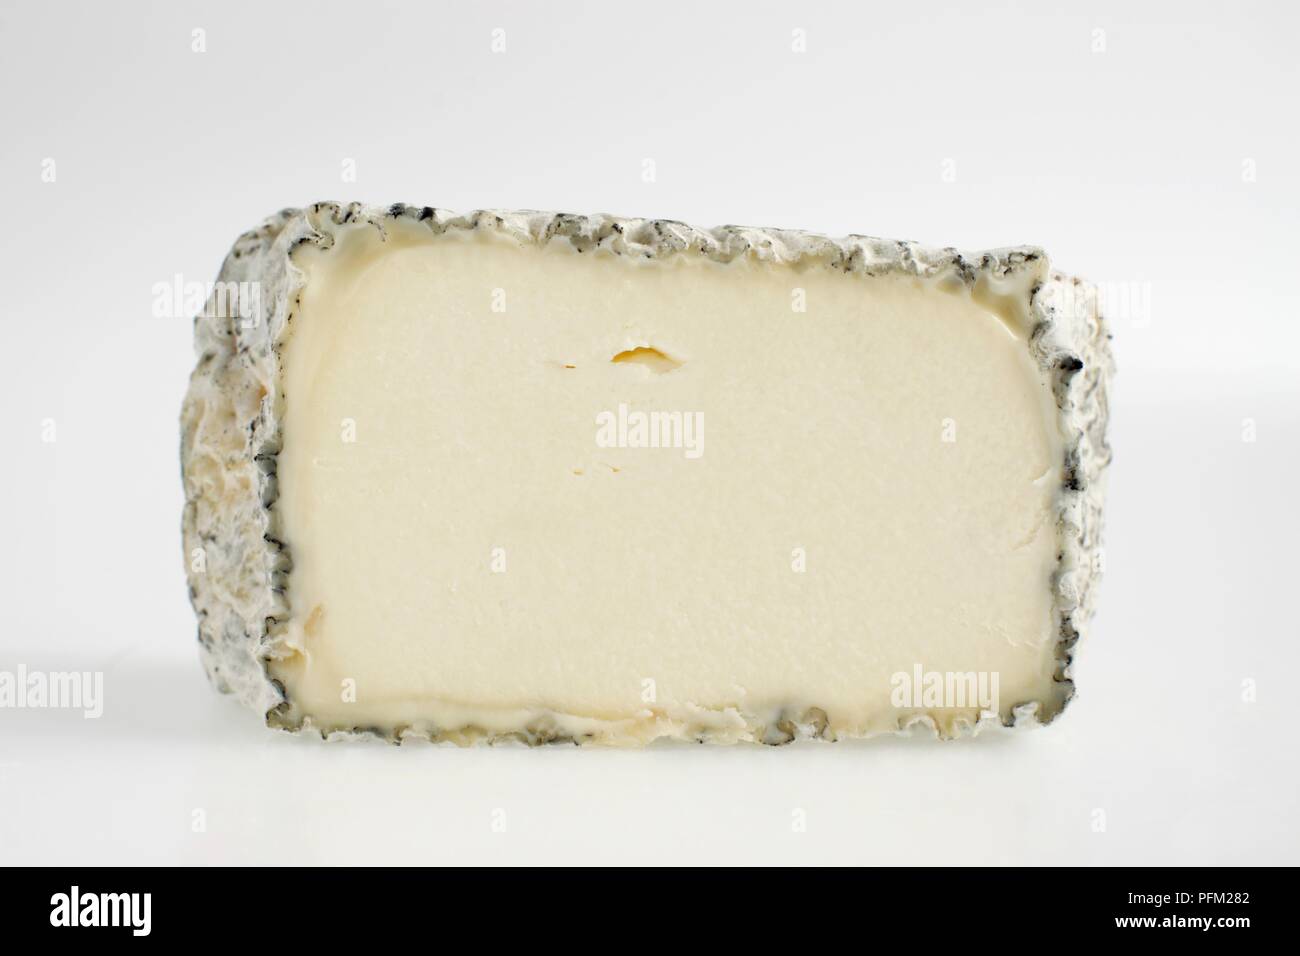 Tranche de fromage de chèvre Français Trefle bleu-gris avec de la moisissure sur la couenne Banque D'Images